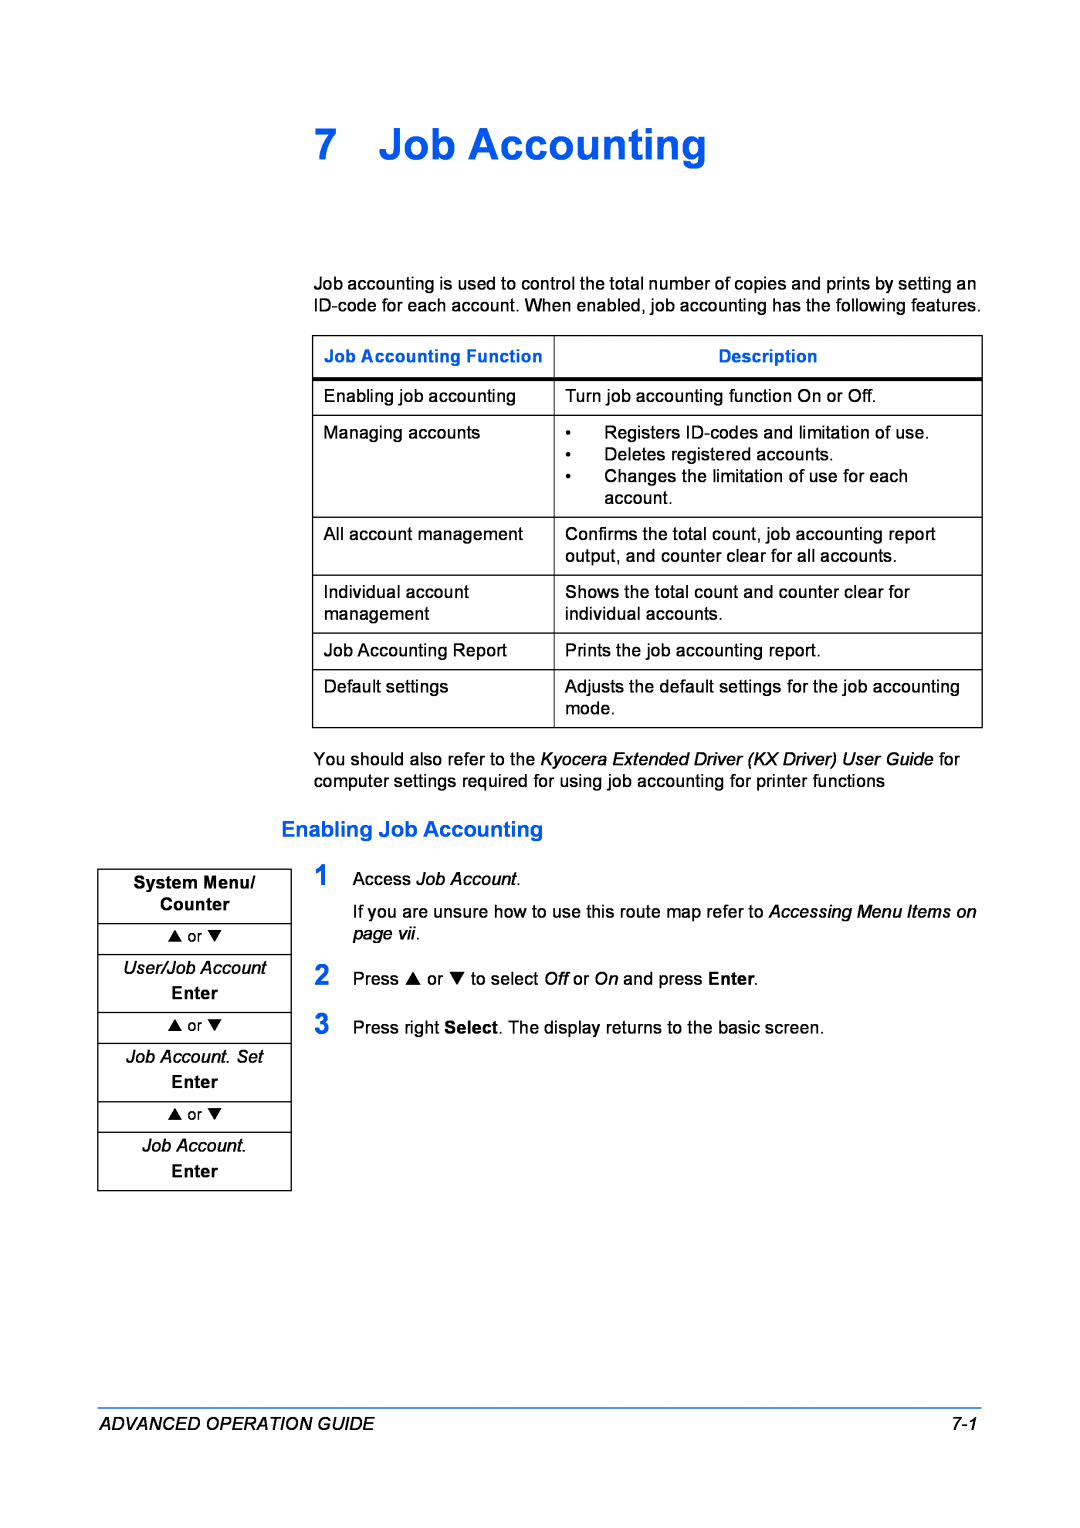 Kyocera KM-1820 manual Enabling Job Accounting 